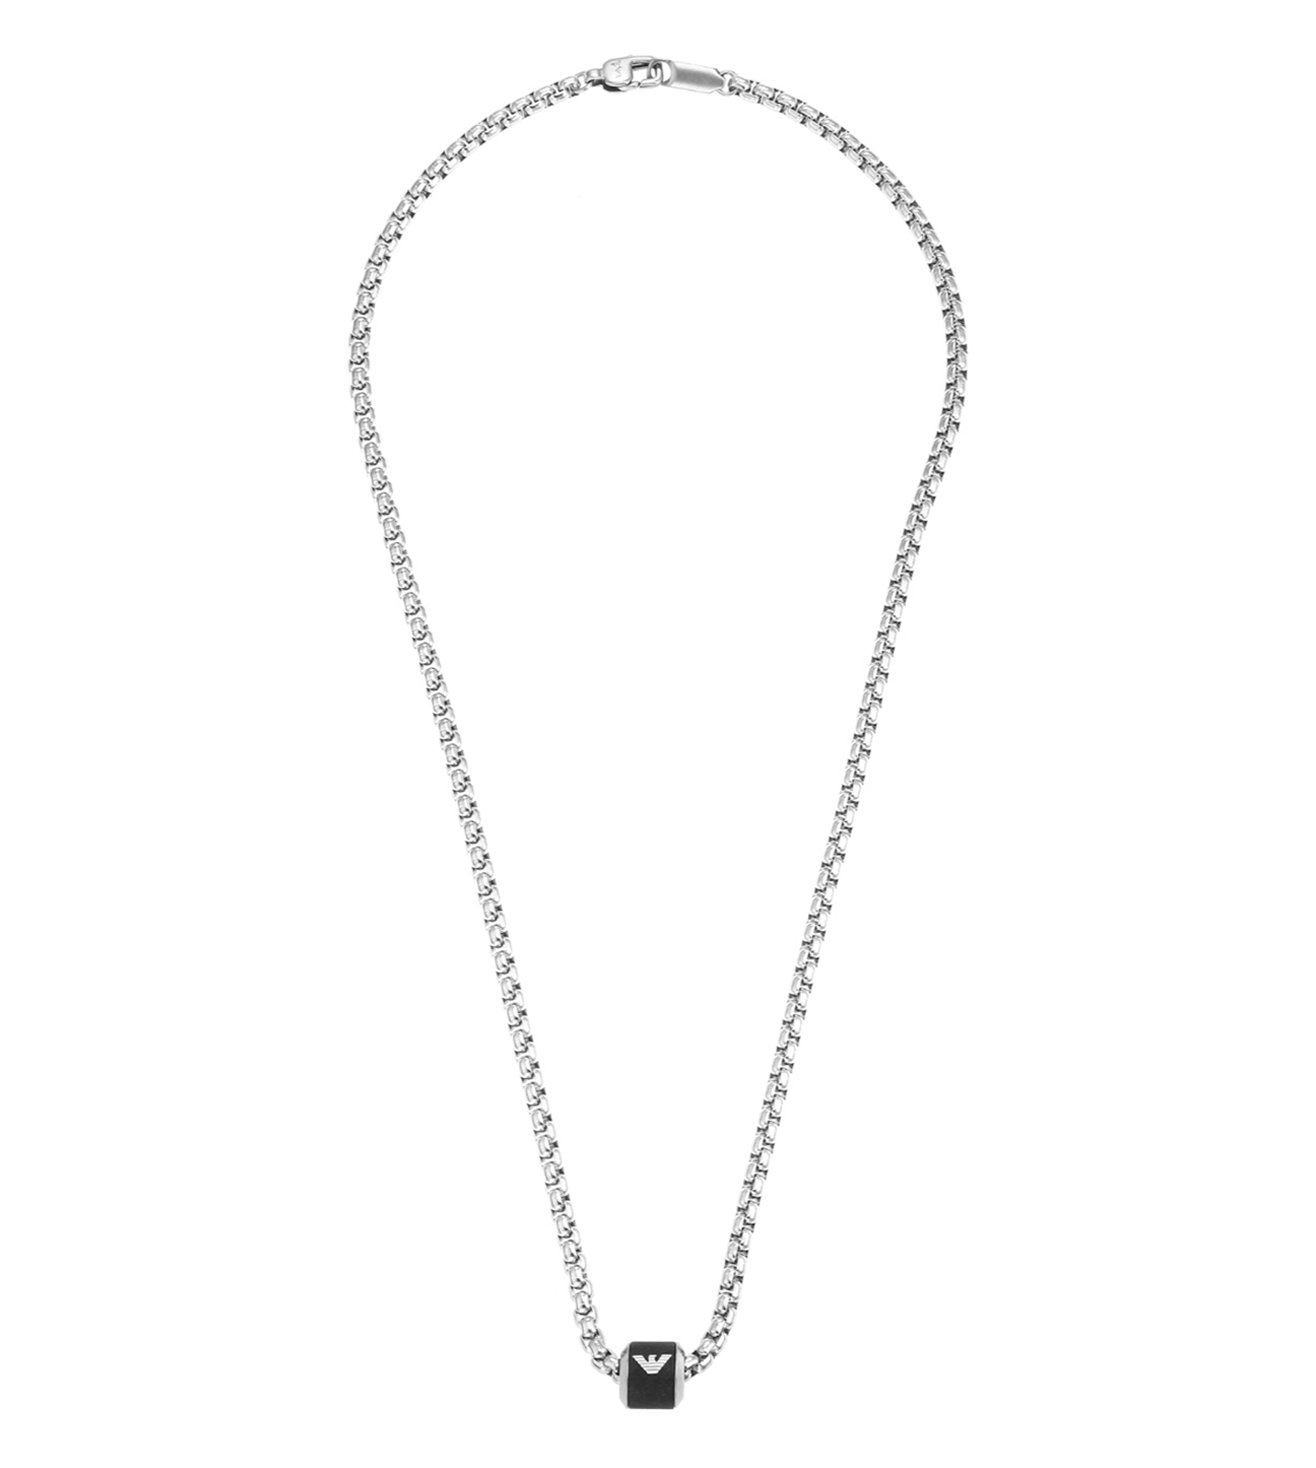 Buy Emporio Armani Emporio Armani Silver Essential Necklace at Redfynd